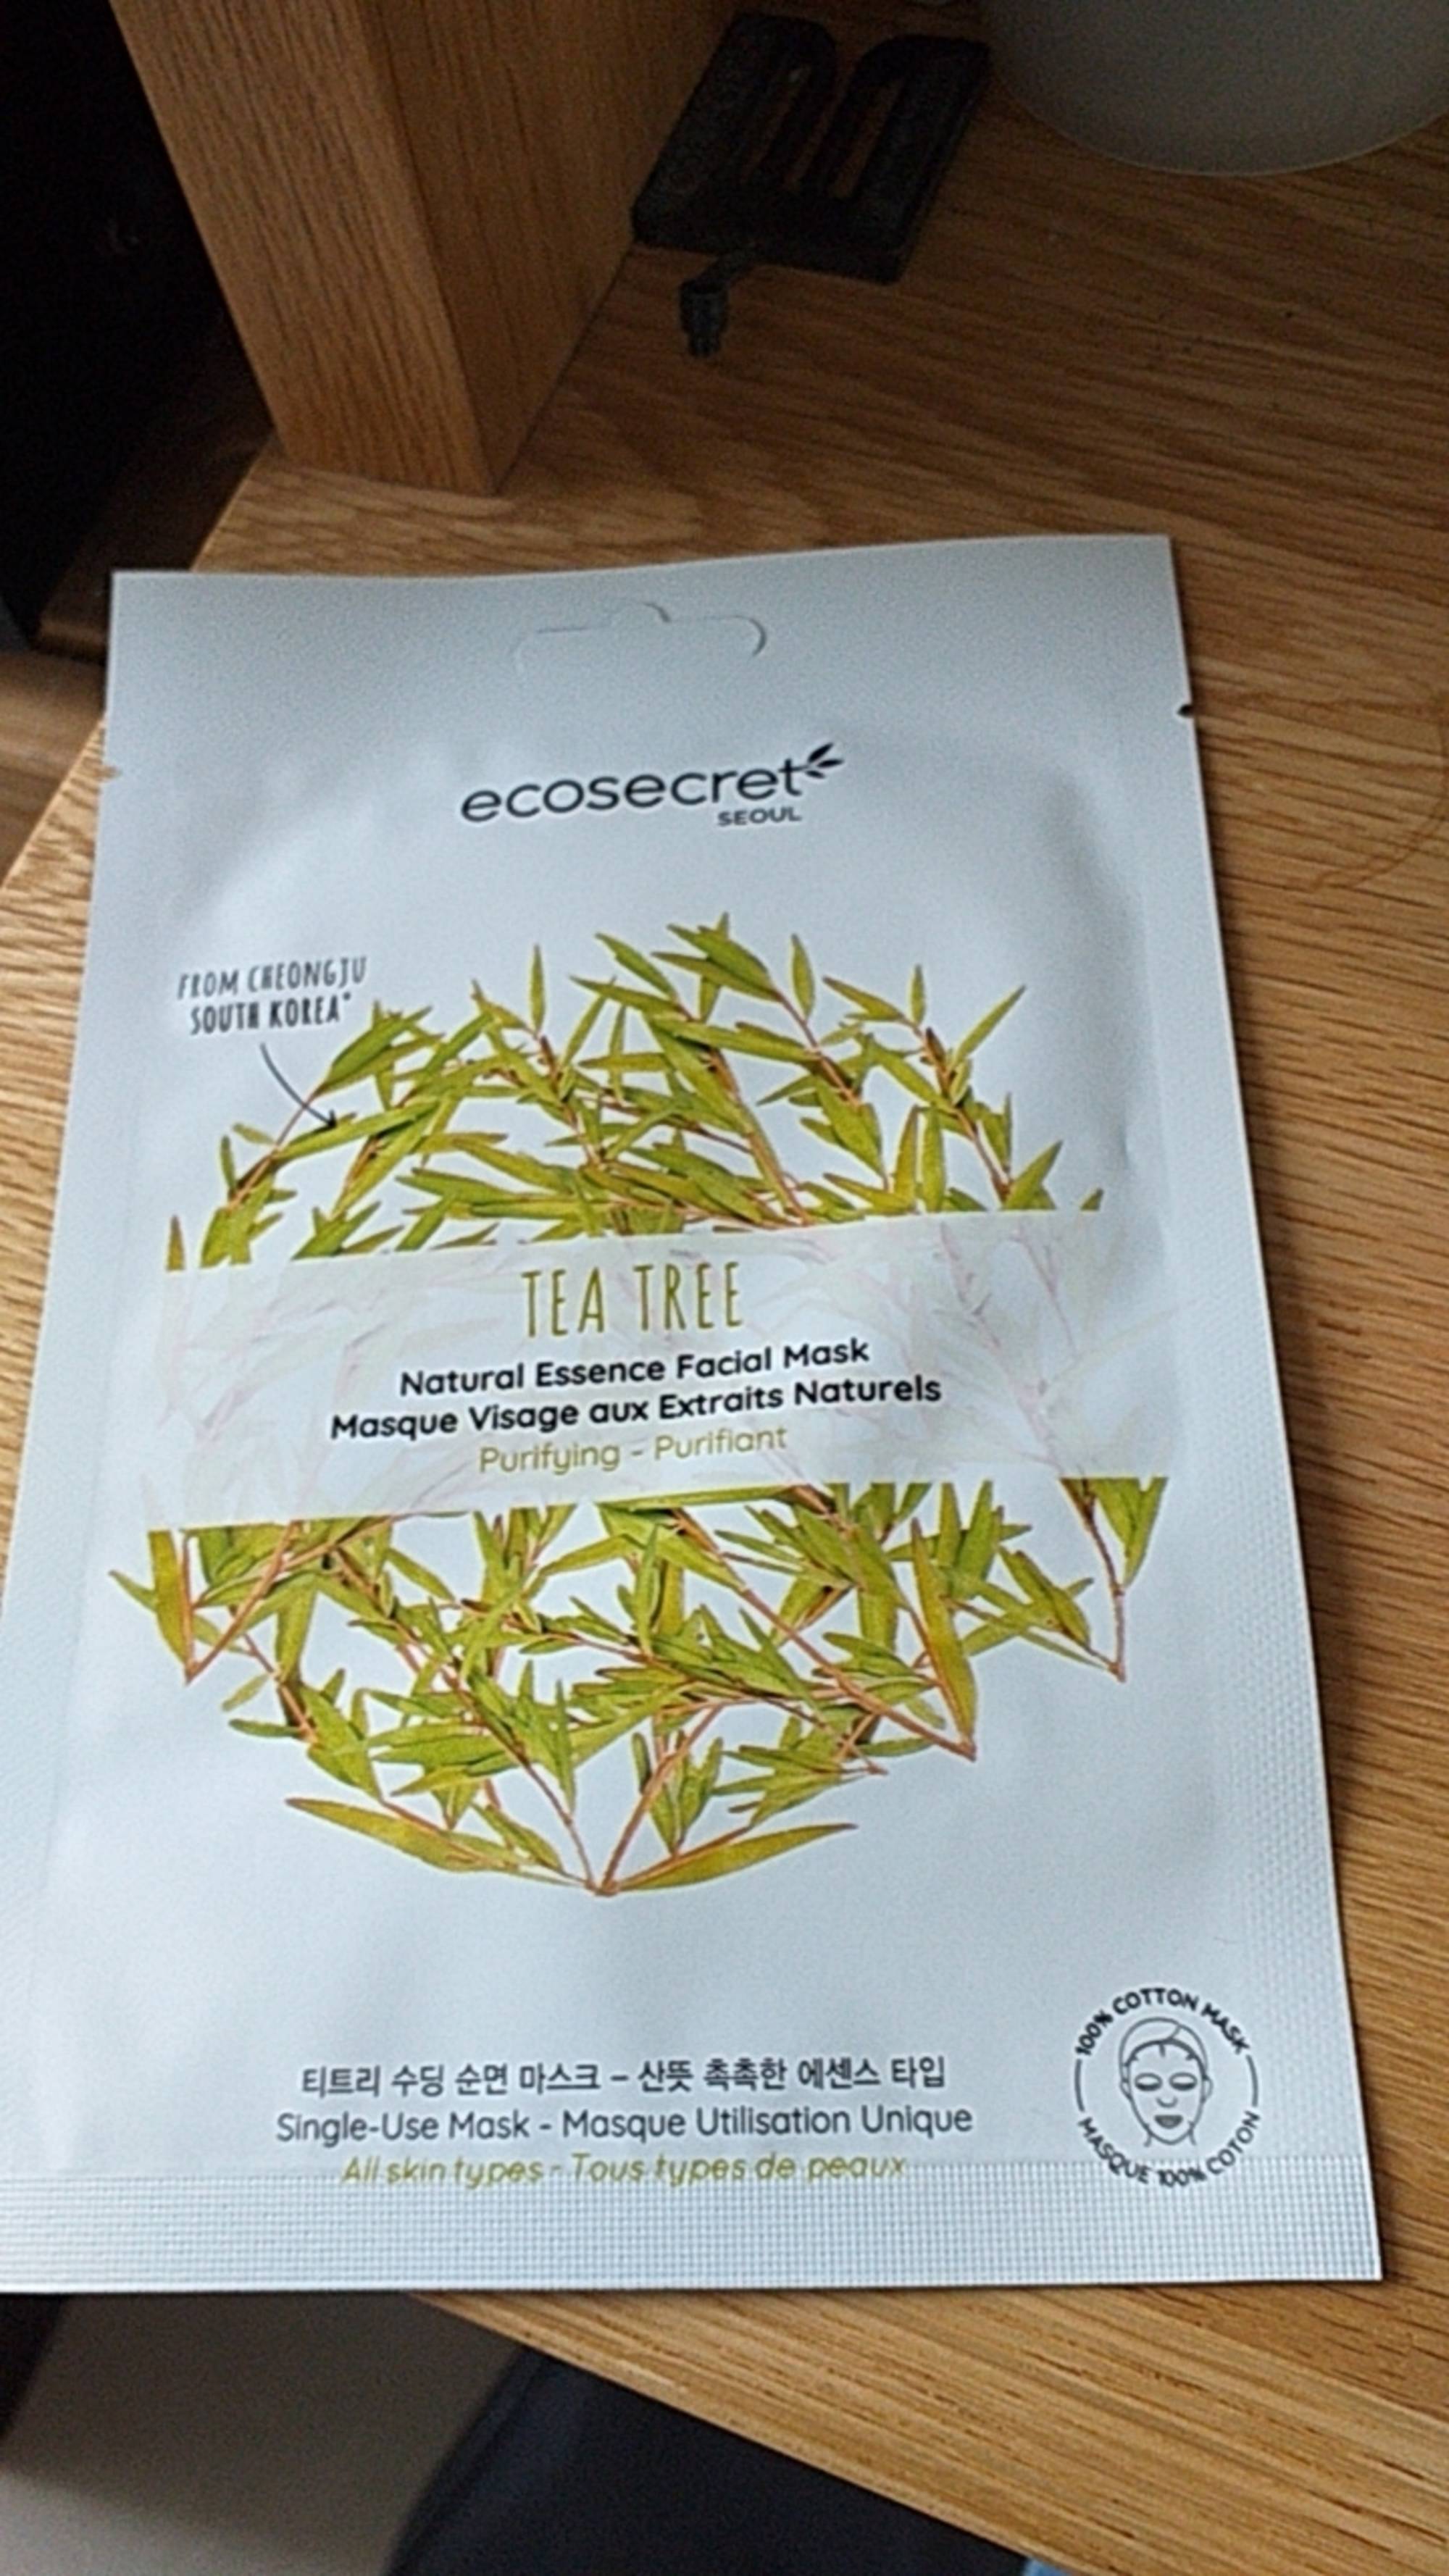 ECO SECRET SEOUL - Tea tree - Masque visage aux extraits naturels